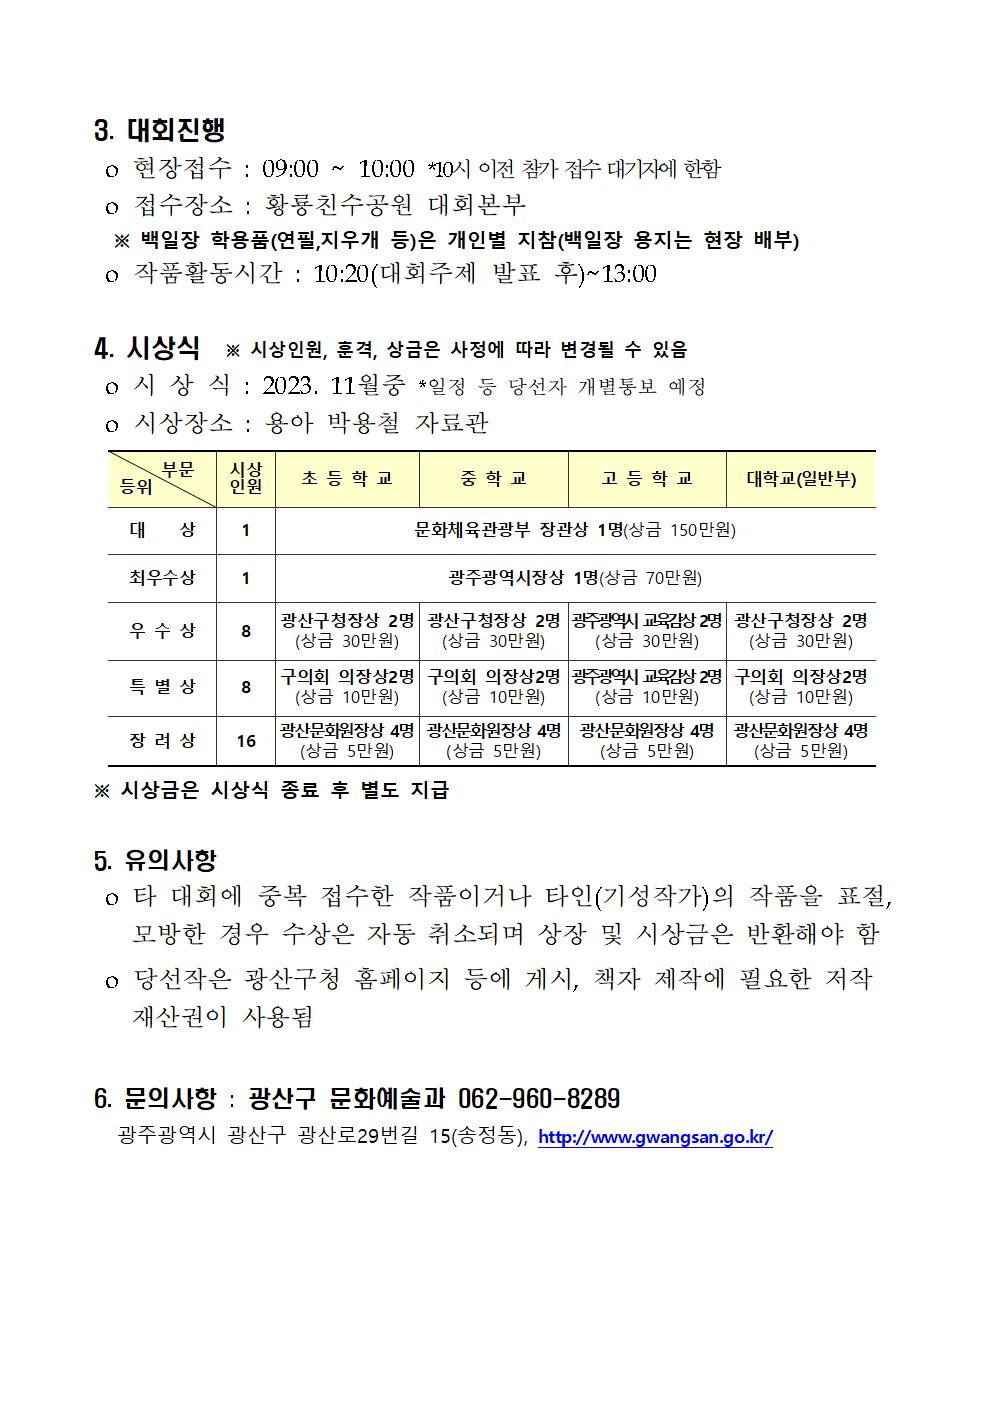 광산구청장 문화예술과_제32회 용아 박용철 전국 백일장 개최 공고002